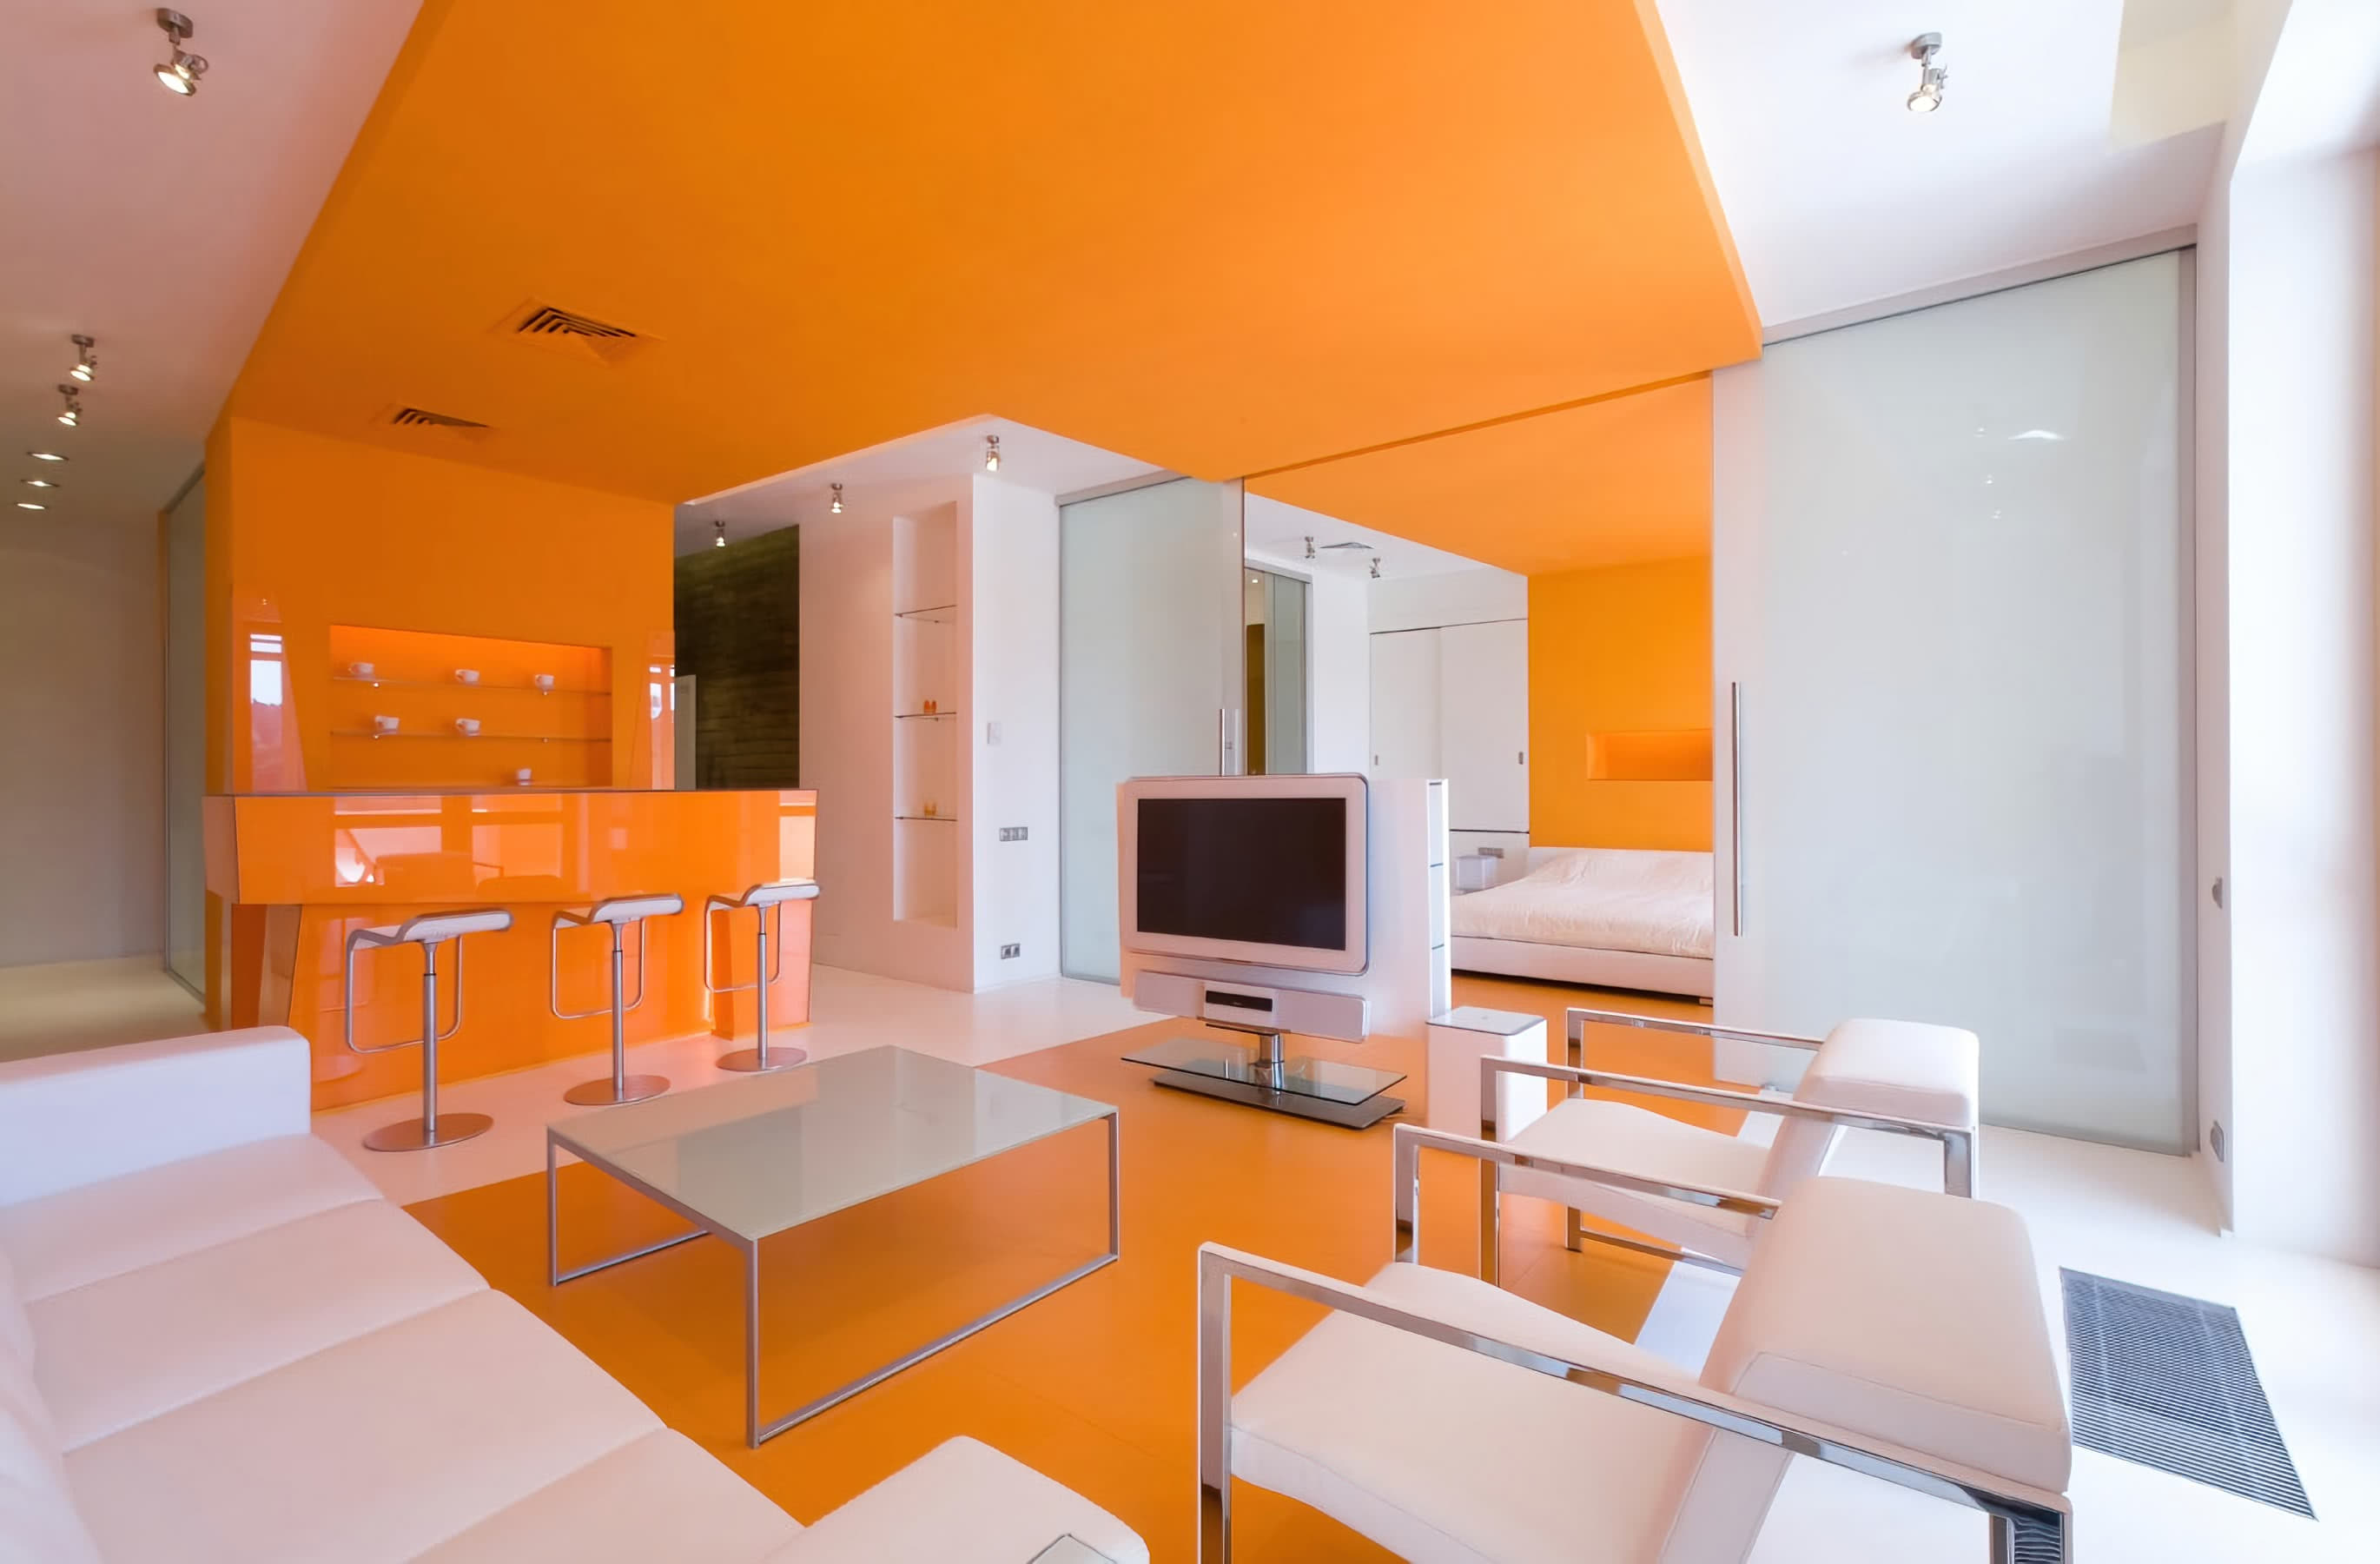 Кухня. Оранжевый потолок, пол, мебель